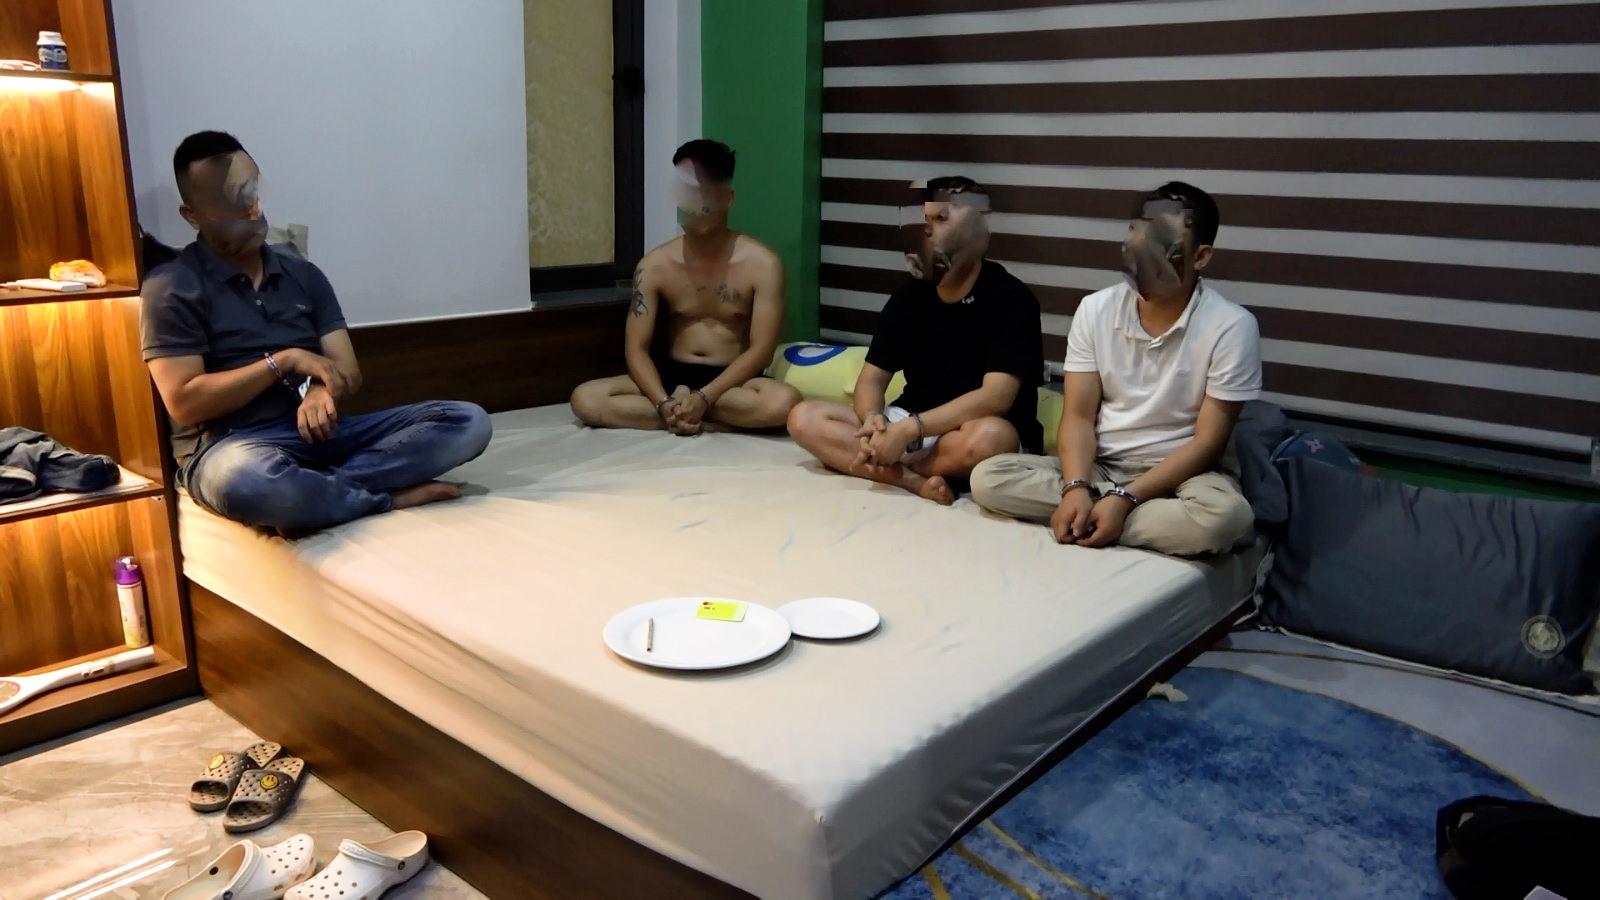 4 đối tượng: Huy, Luân, Hiếu, Tuấn bị lực lượng Công an TP. Đông Hà bắt quả tang khi đang thực hiện hành vi sử dụng ma túy - Ảnh: Hải Phi